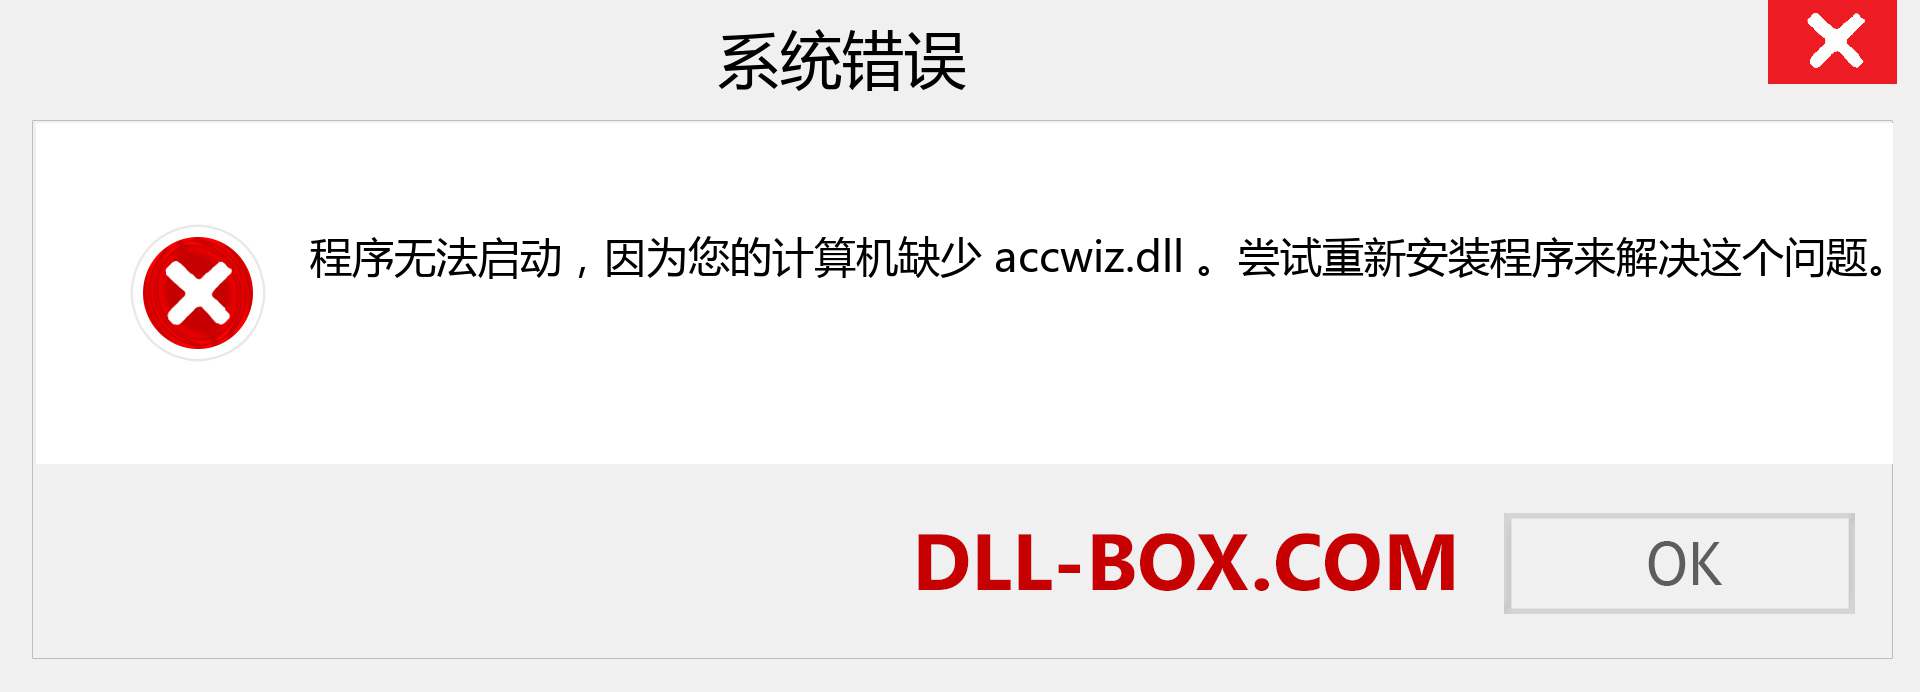 accwiz.dll 文件丢失？。 适用于 Windows 7、8、10 的下载 - 修复 Windows、照片、图像上的 accwiz dll 丢失错误